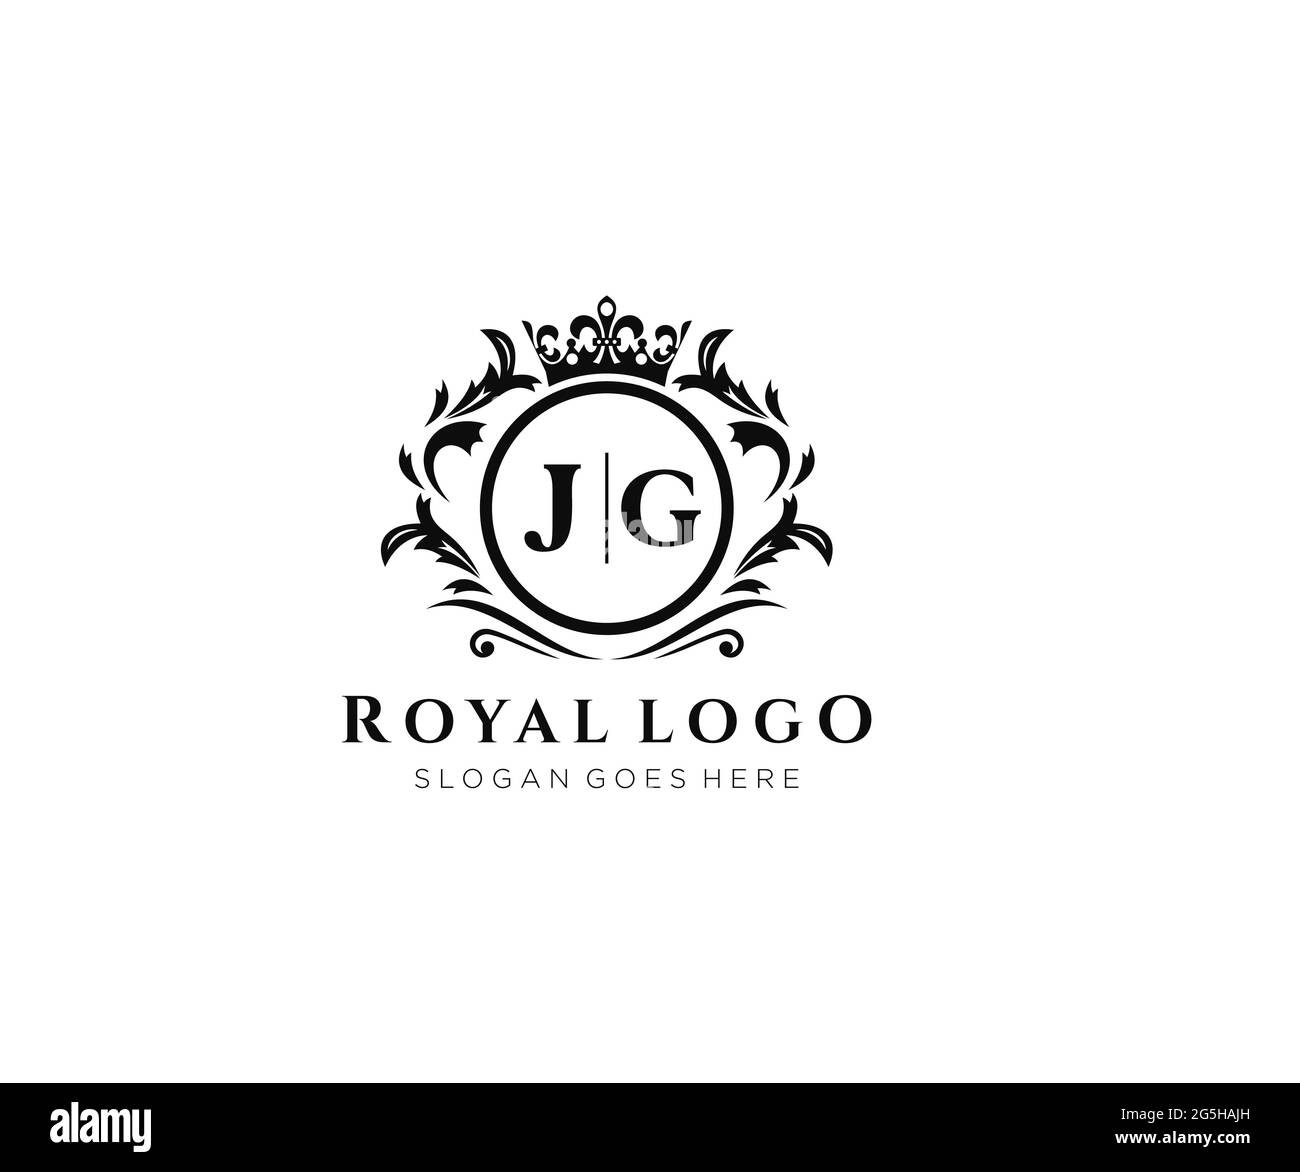 Modèle de logo de marque de luxe JG Letter, pour restaurant, Royalty, Boutique, café, Hôtel, héraldique, bijoux, mode et autres illustrations vectorielles. Illustration de Vecteur